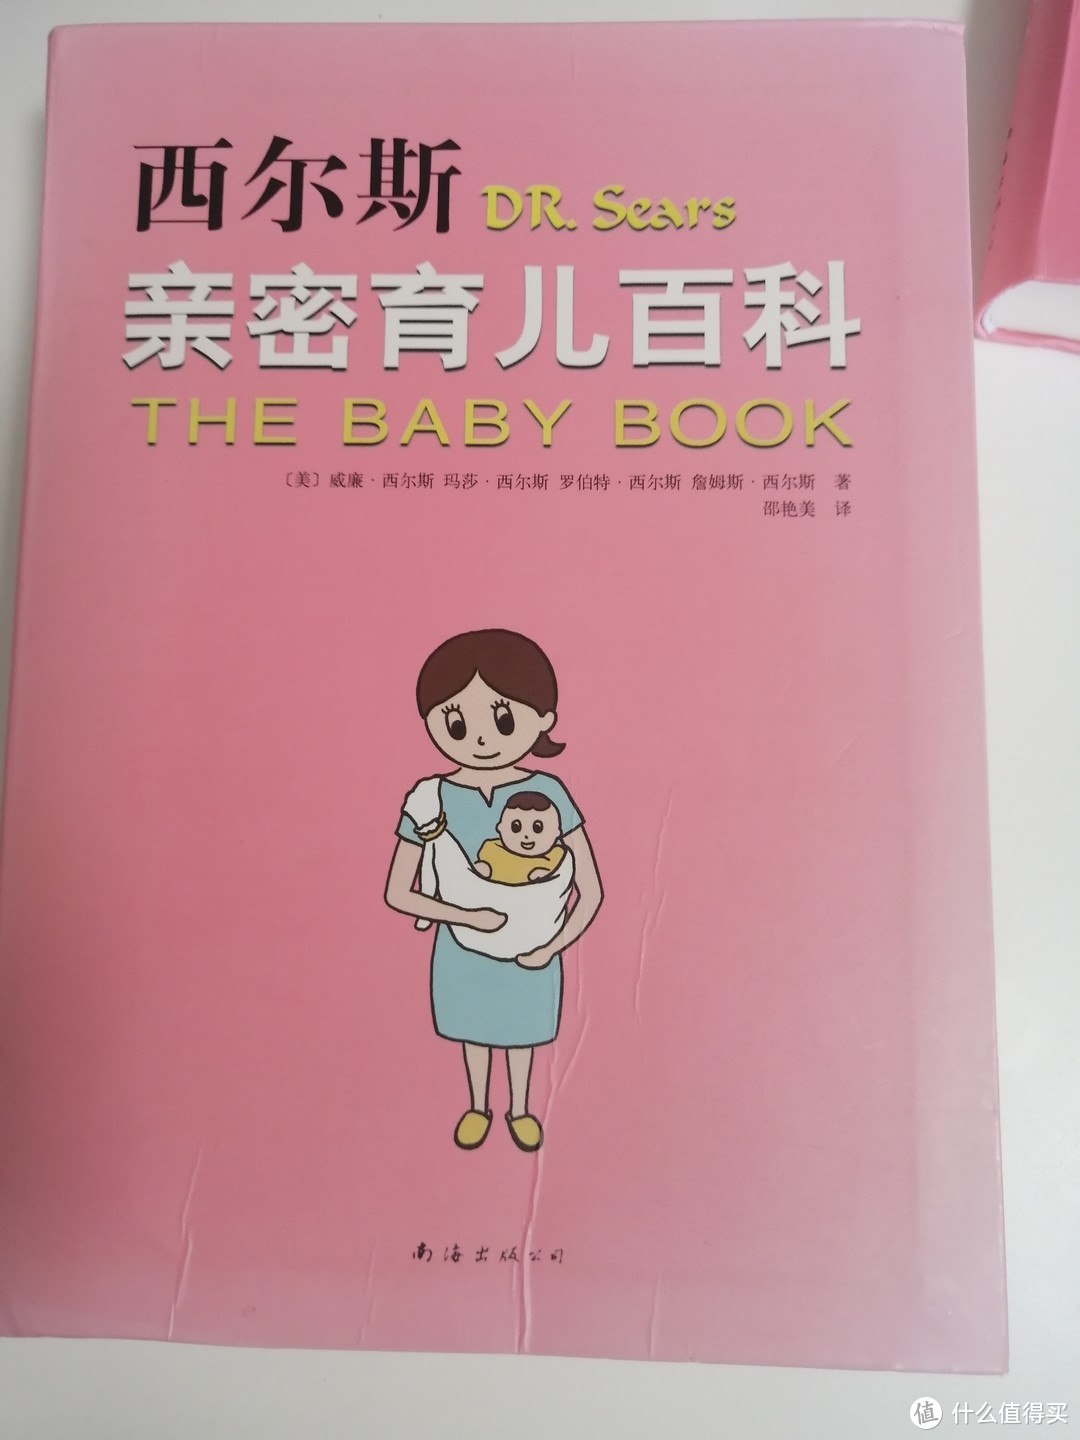 孕期必入的一套百科全书 | 西尔斯怀孕百科+西尔斯亲密育儿百科